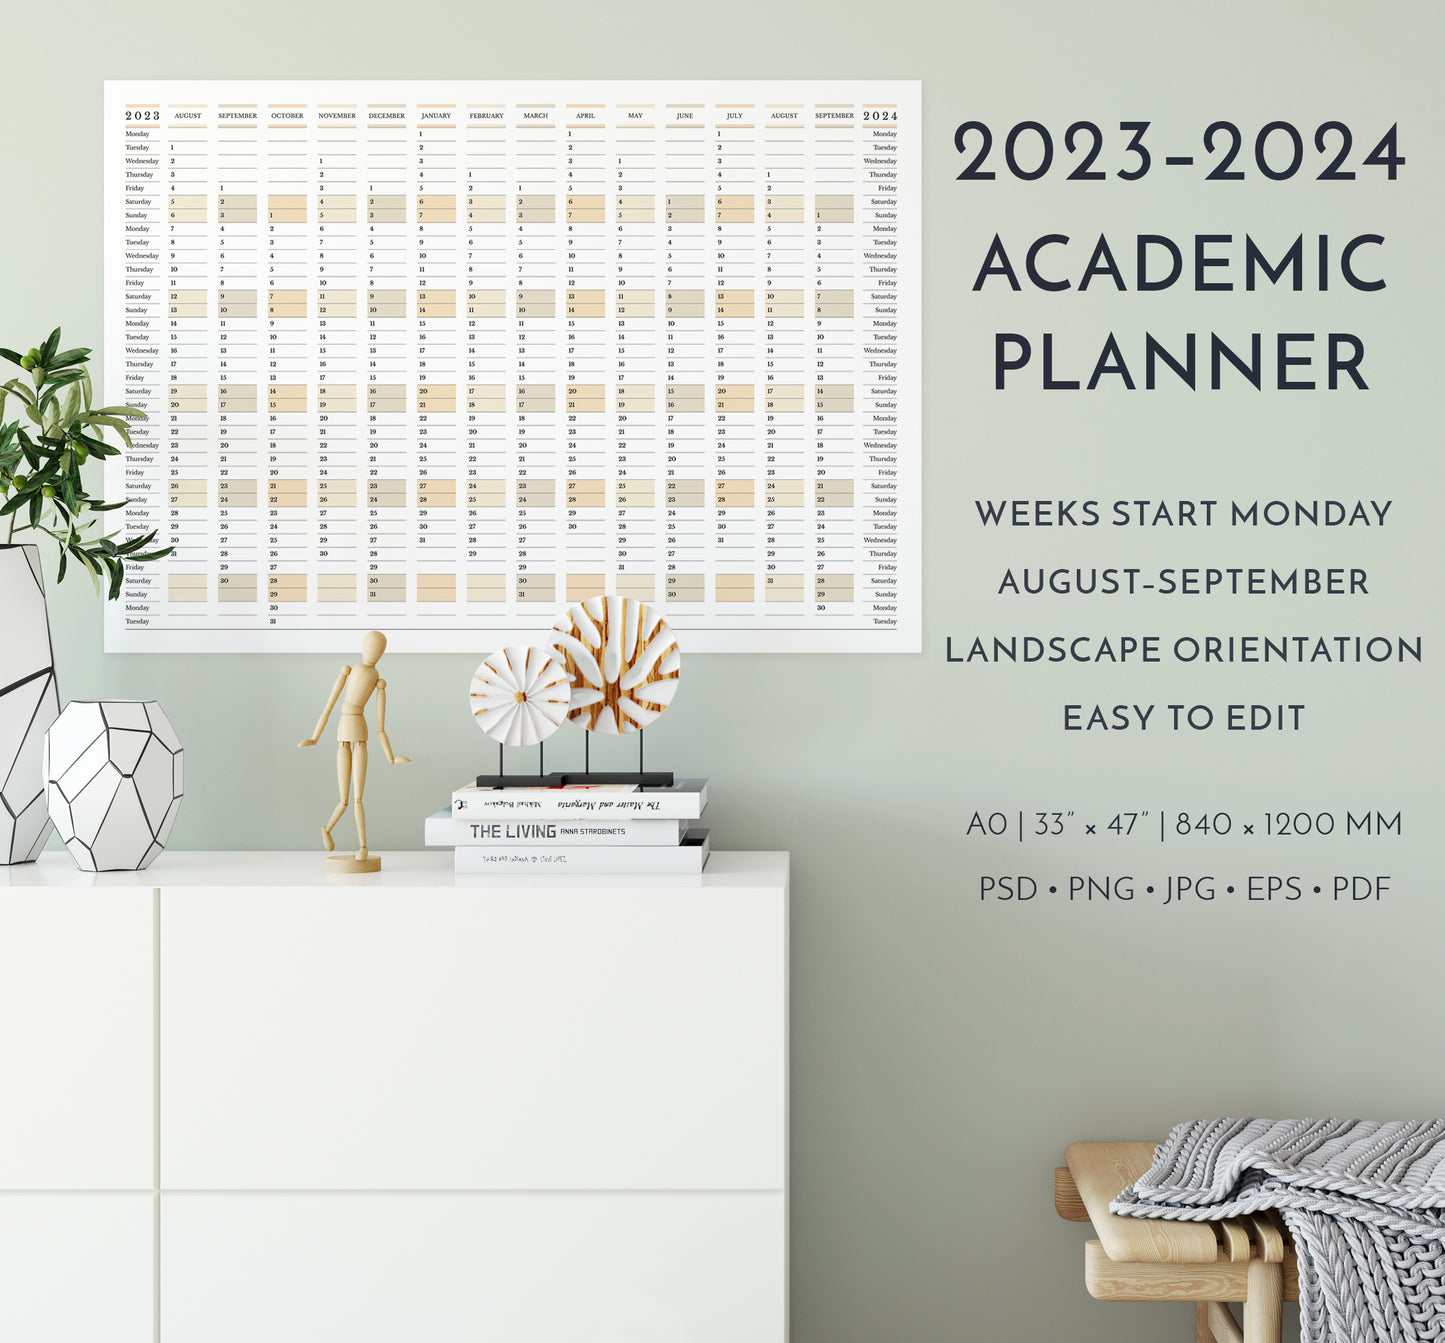 2023-2024 Academic Planner, weeks start Monday, in landscape orientation in interior